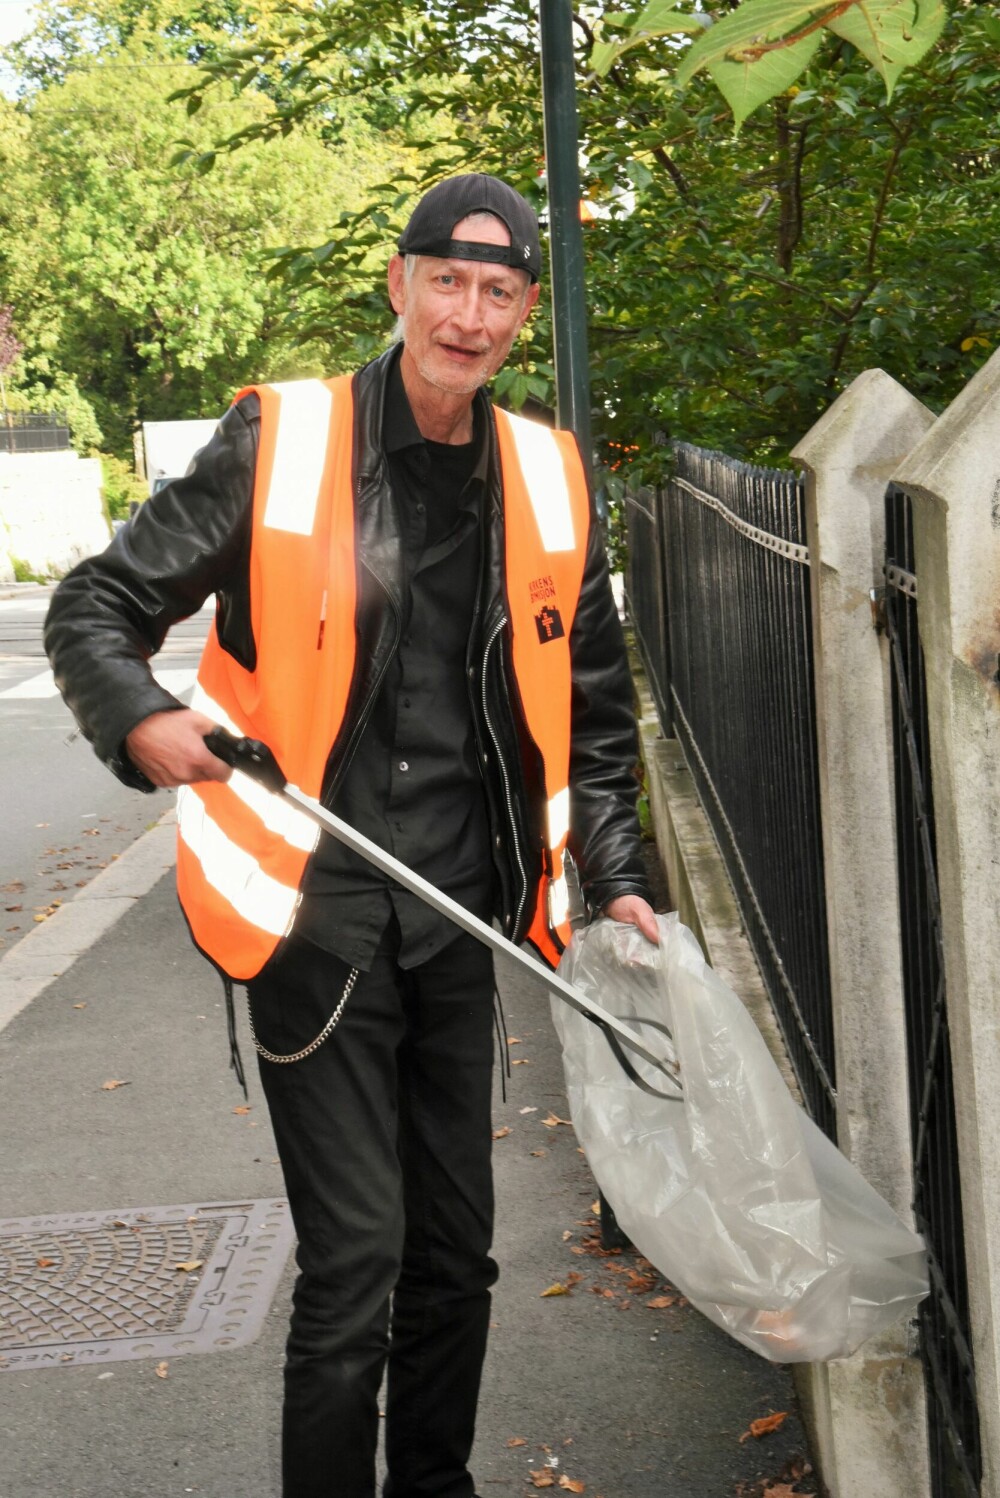 <b>STOLTHET:</b> Carl elsker å bidra til renere gater i Oslo, og han er glad han får jobbe i Kirkens Bymisjons jobbtilbud.